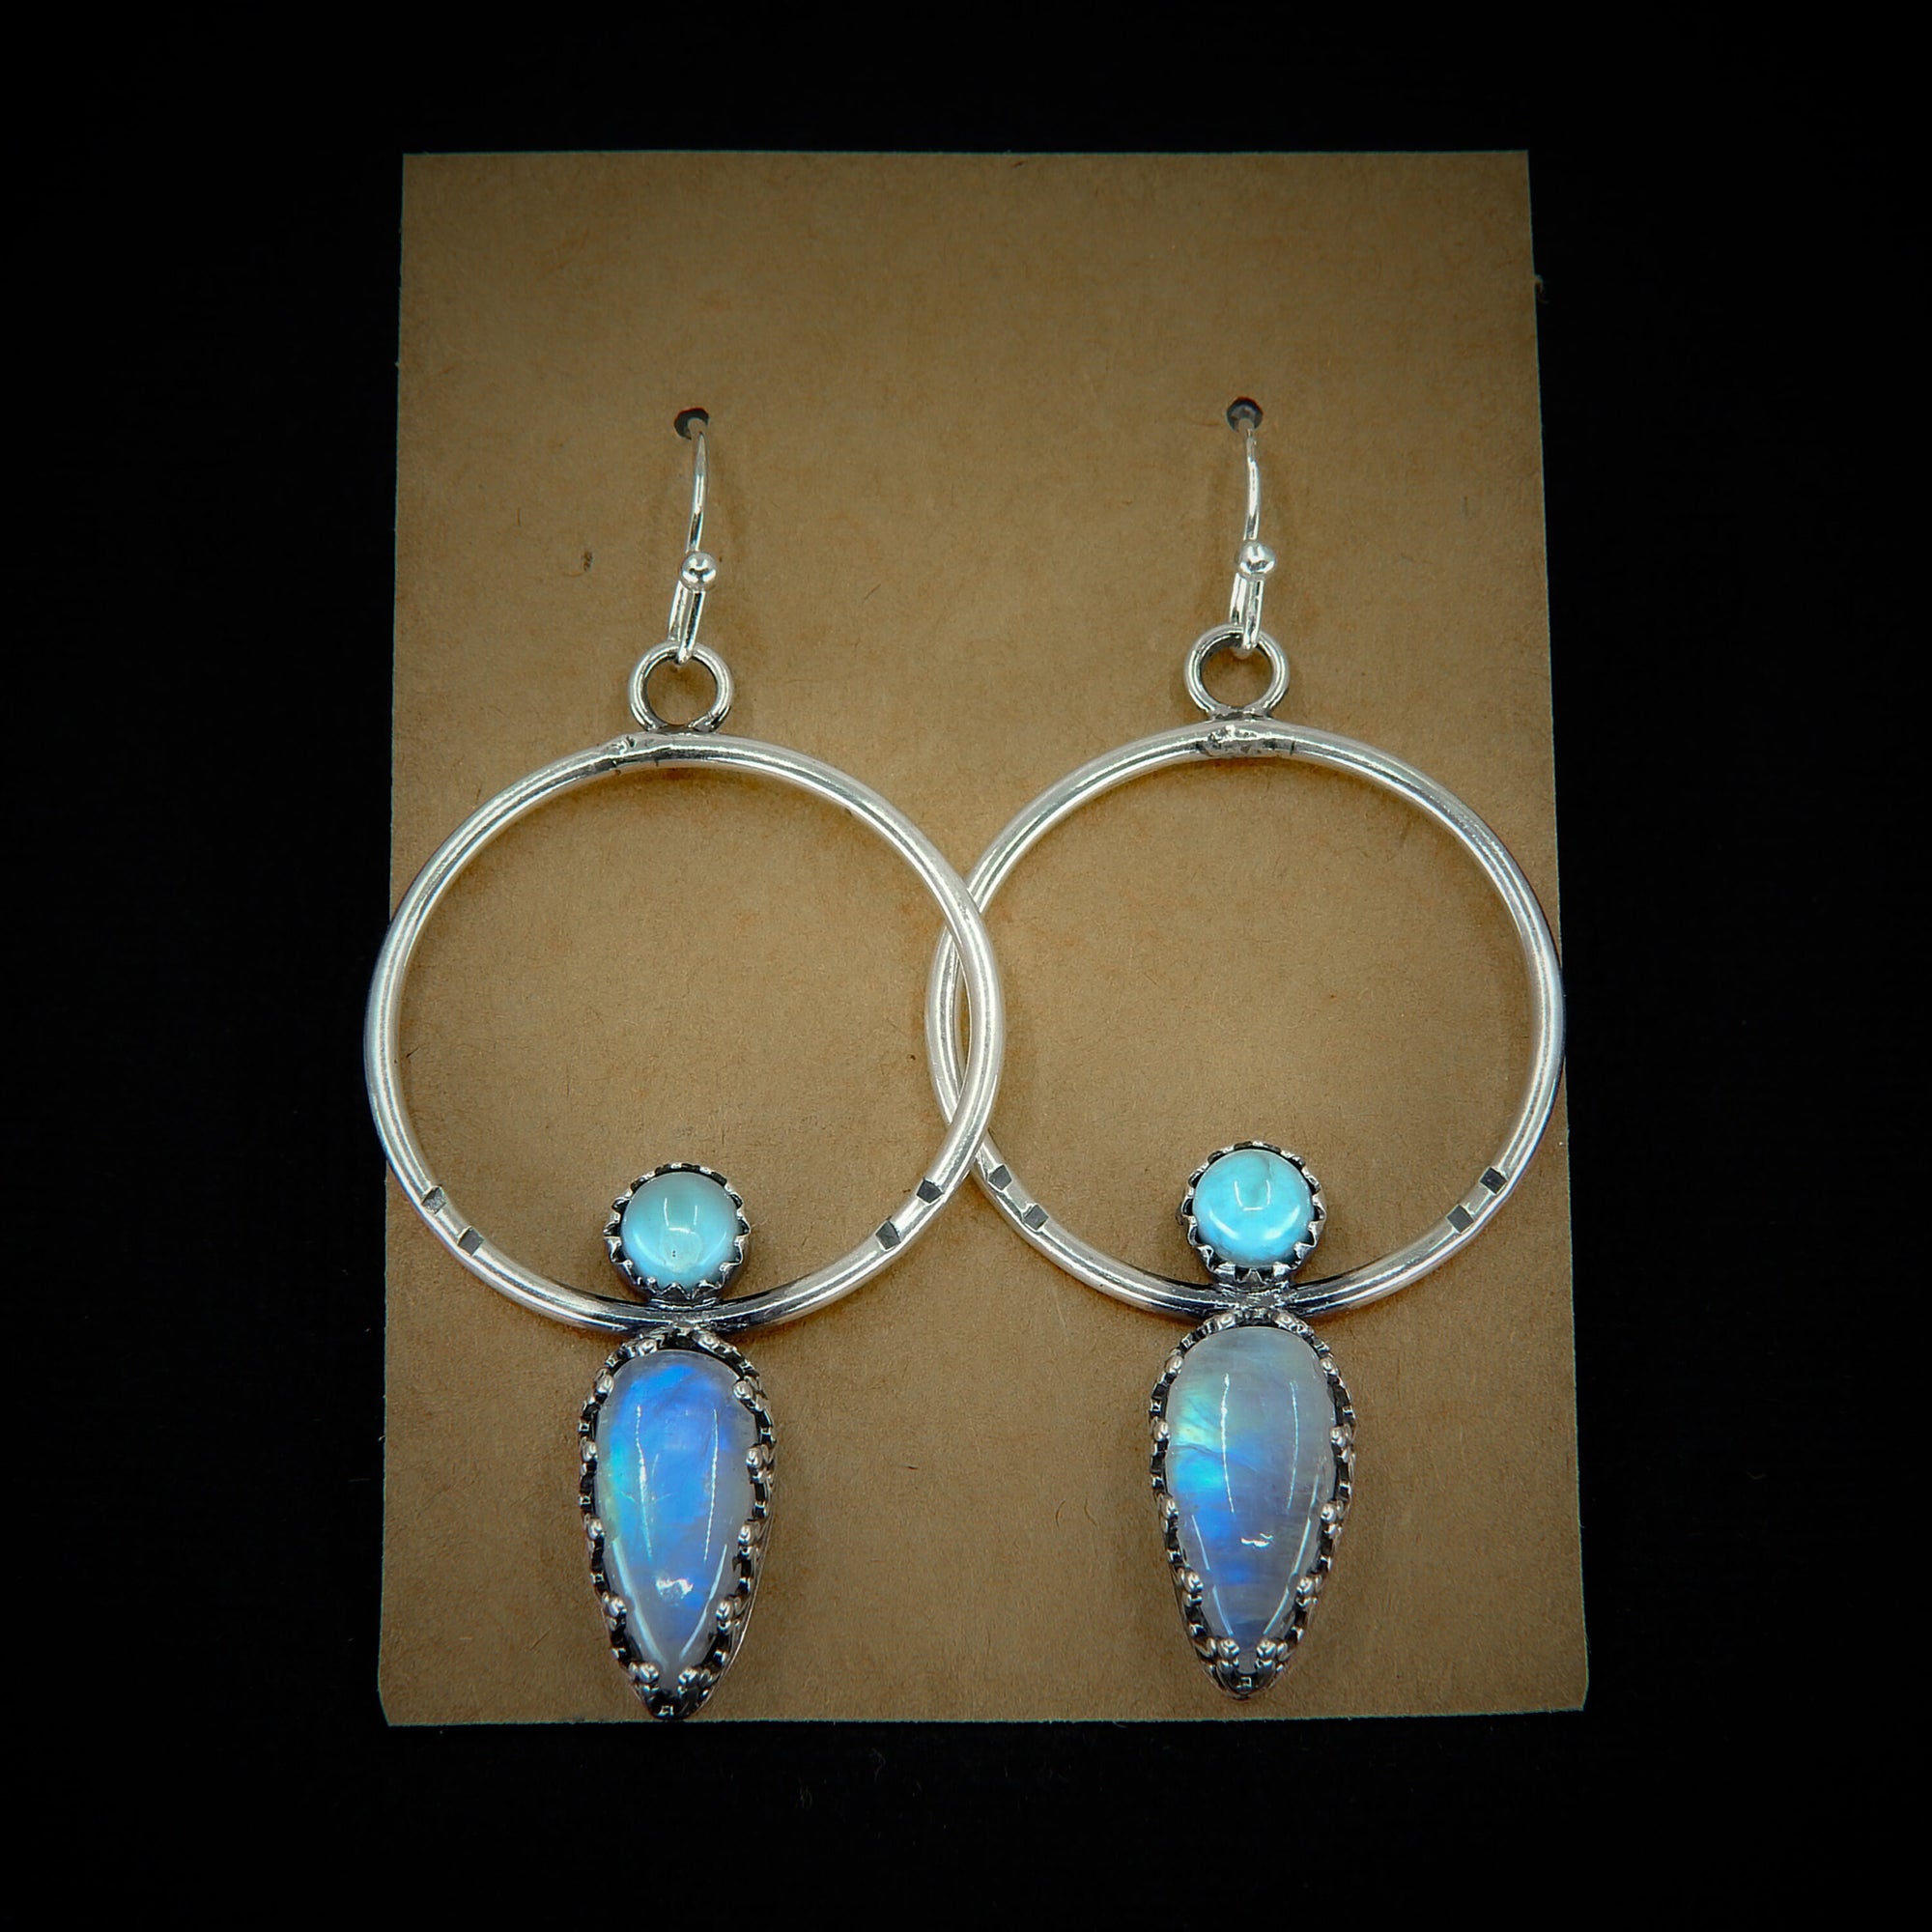 Larimar & Moonstone Earrings - Sterling Silver - Blue Larimar Earrings - Hoop Earrings - Rainbow Moonstone Hoops - Larimar Dangles OOAK